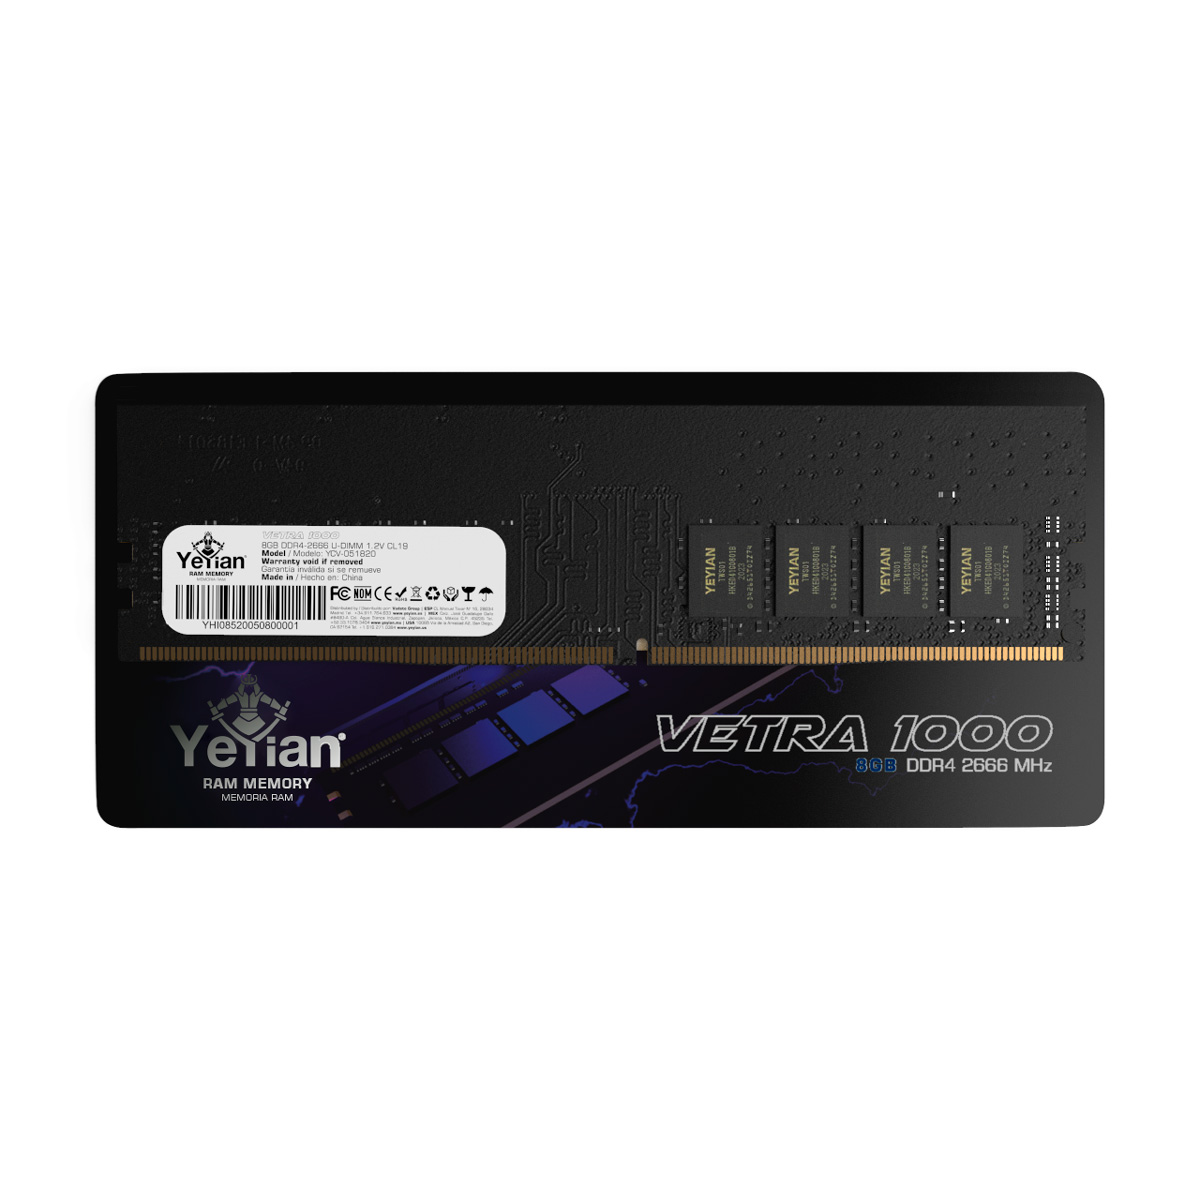 MEMORIA YEYIAN DDR4 GAMING YCV-051820 VETRA, 8GB, MHZ 2666